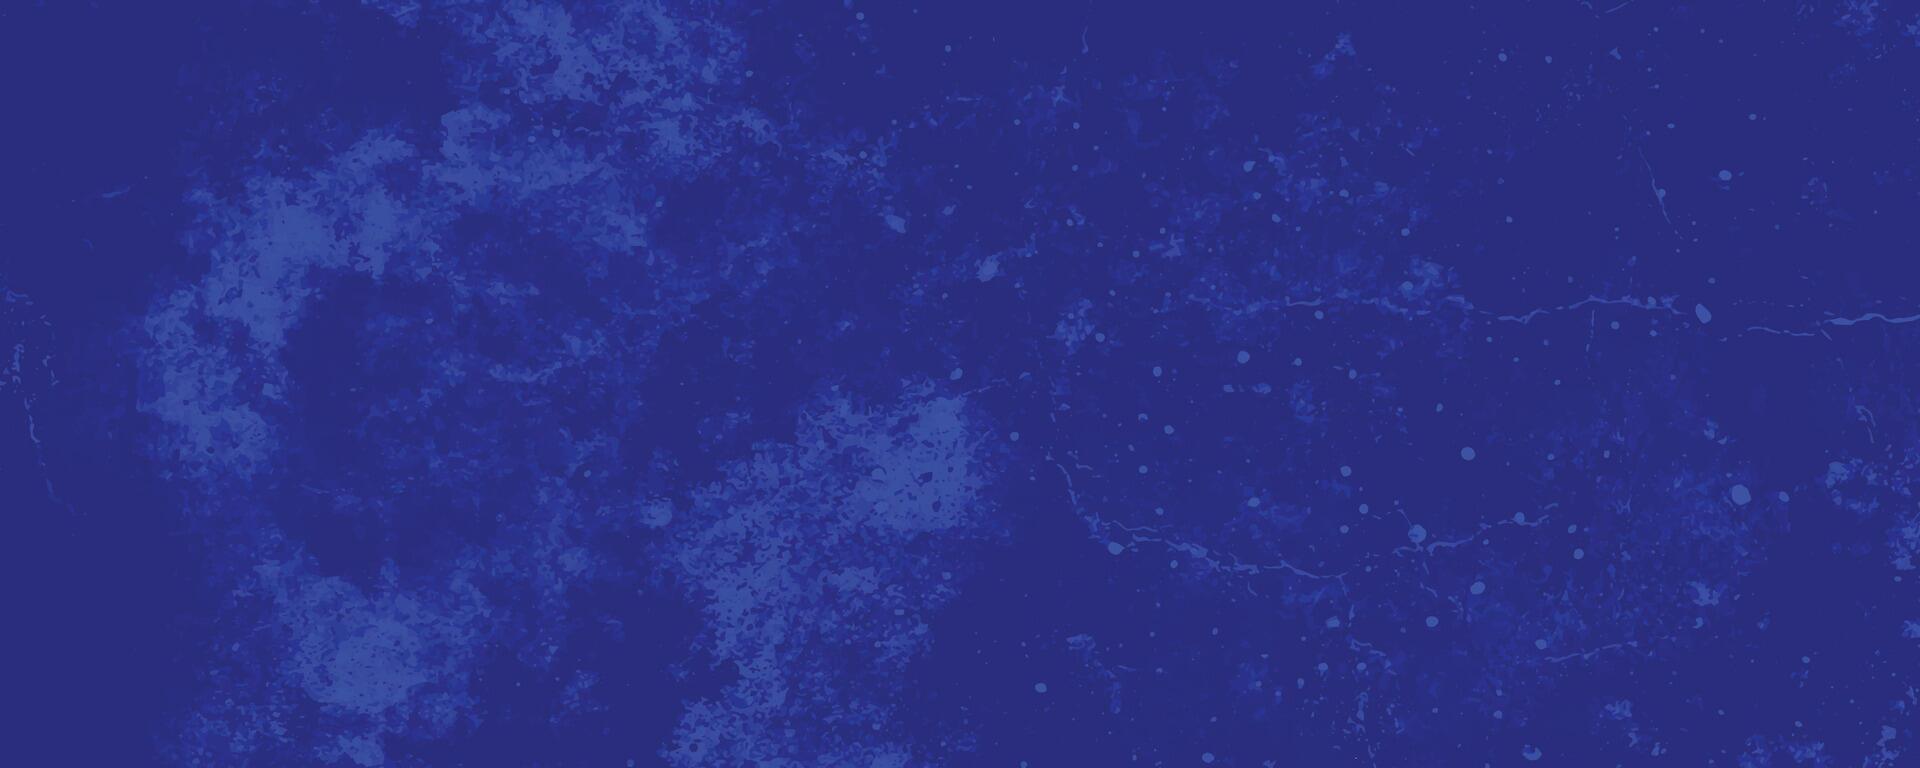 Scratch grunge urban background, distressed blue grunge texture background, abstract background vector